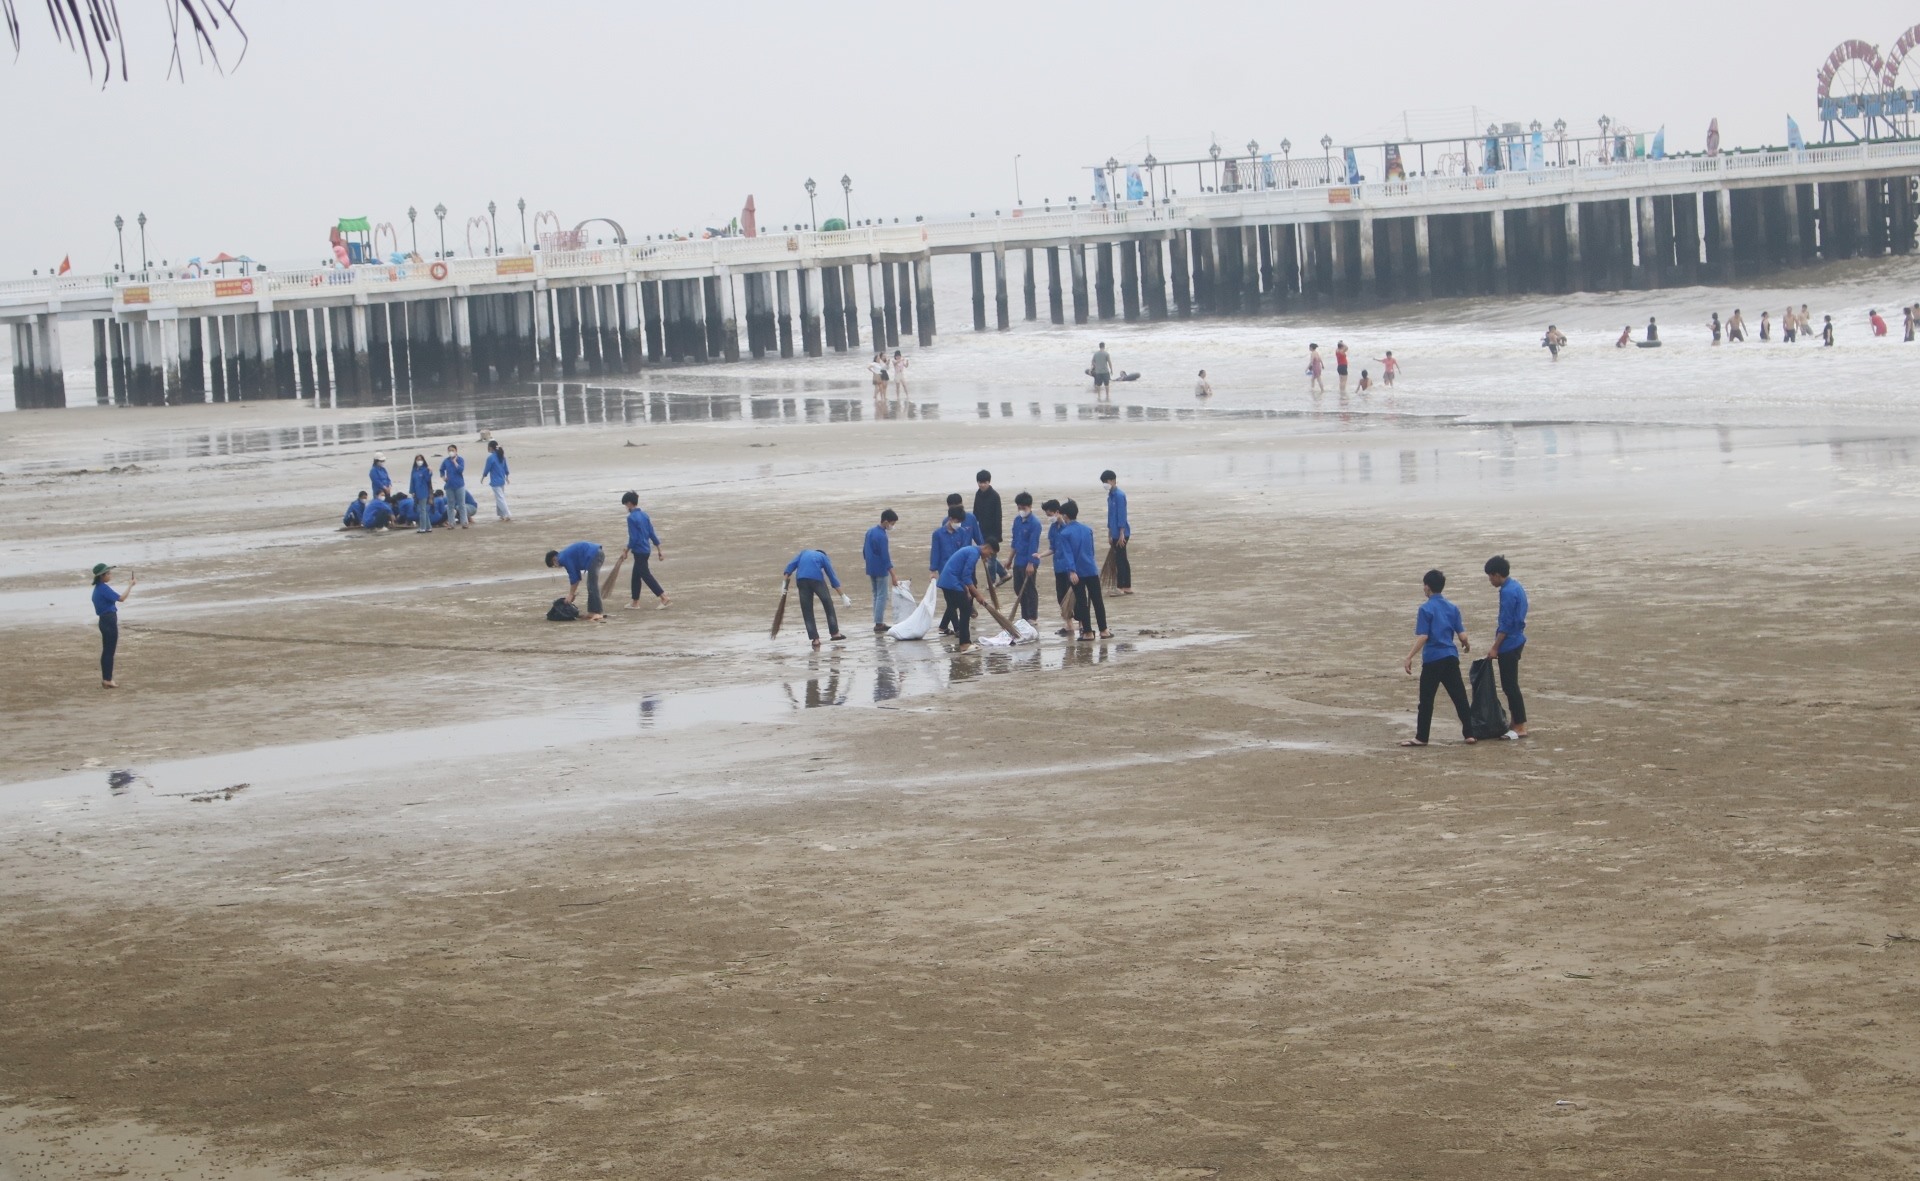 Theo ghi nhận sau phản ánh của Lao Động, trong ngày 23.4, huyện Hoằng Hóa đã huy động hàng trăm thanh niên tình nguyện đến dọc bờ biển Hải Tiến để dọn rác thải. Ảnh: Quách Du